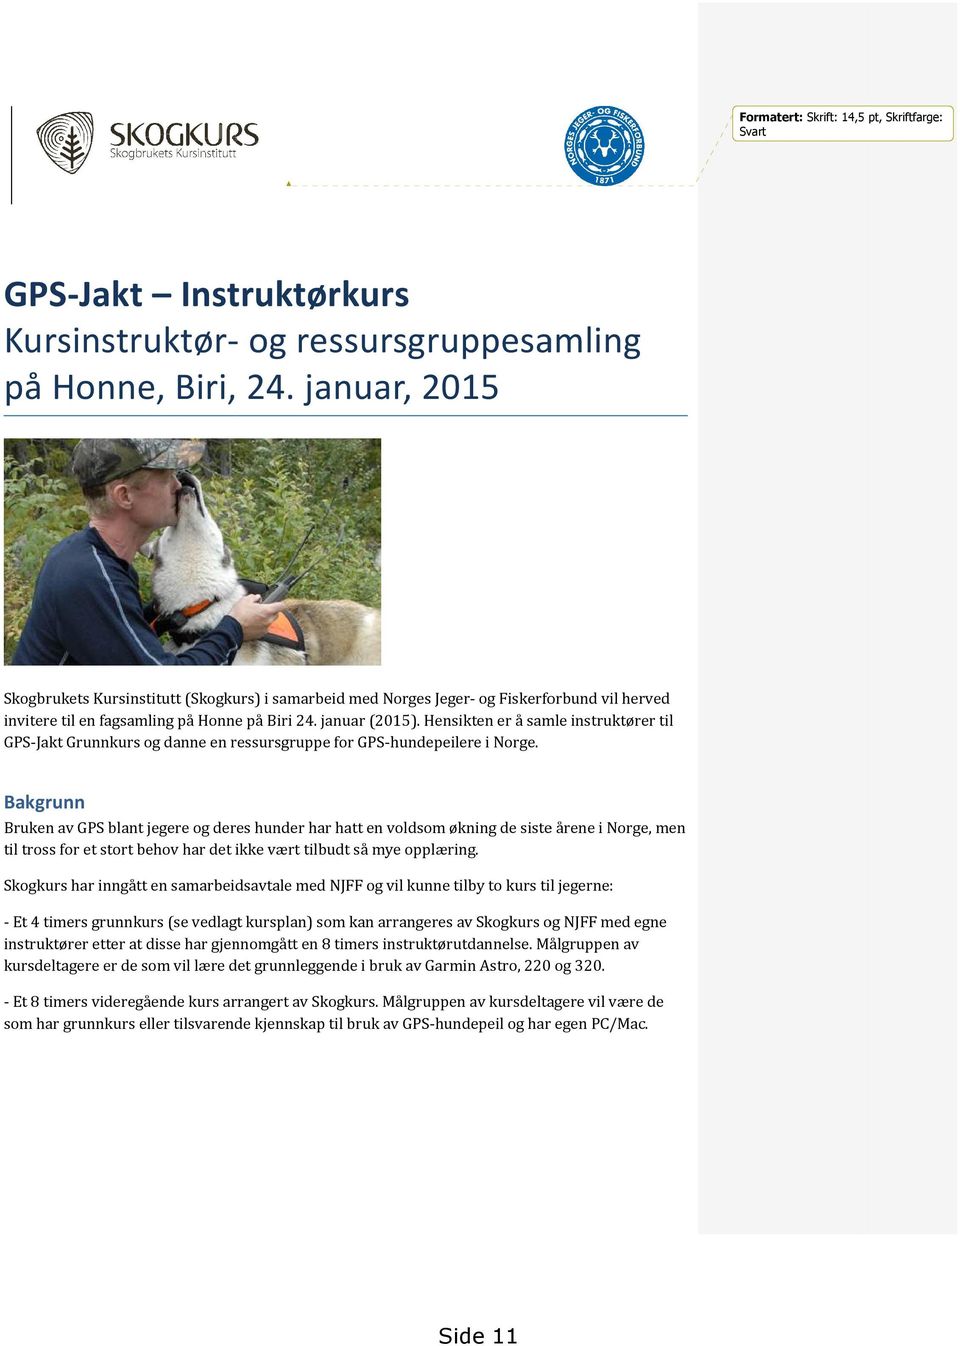 . Hensikten er å samle instruktører til GPS-Jakt Grunnkurs og danne en ressursgruppe for GPS-hundepeilere i Norge.